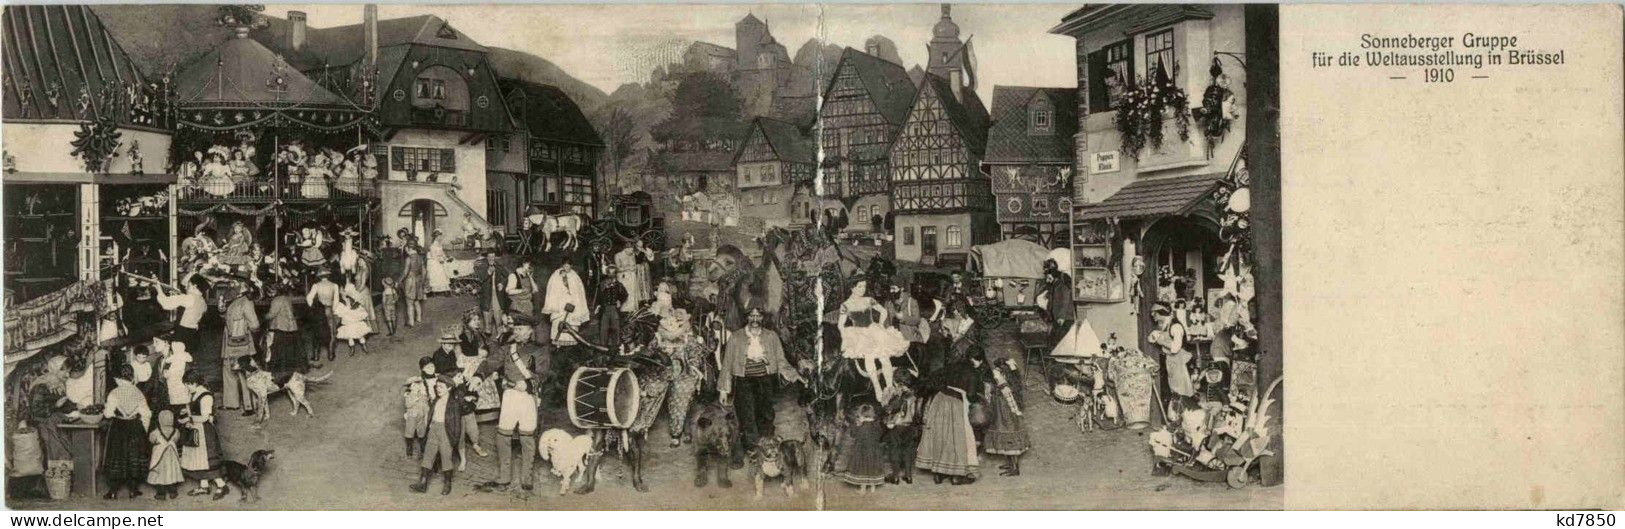 Bruxelles - Sonneberger Gruppe Für Die Weltausstellung 1910 - Klappkarte - Weltausstellungen